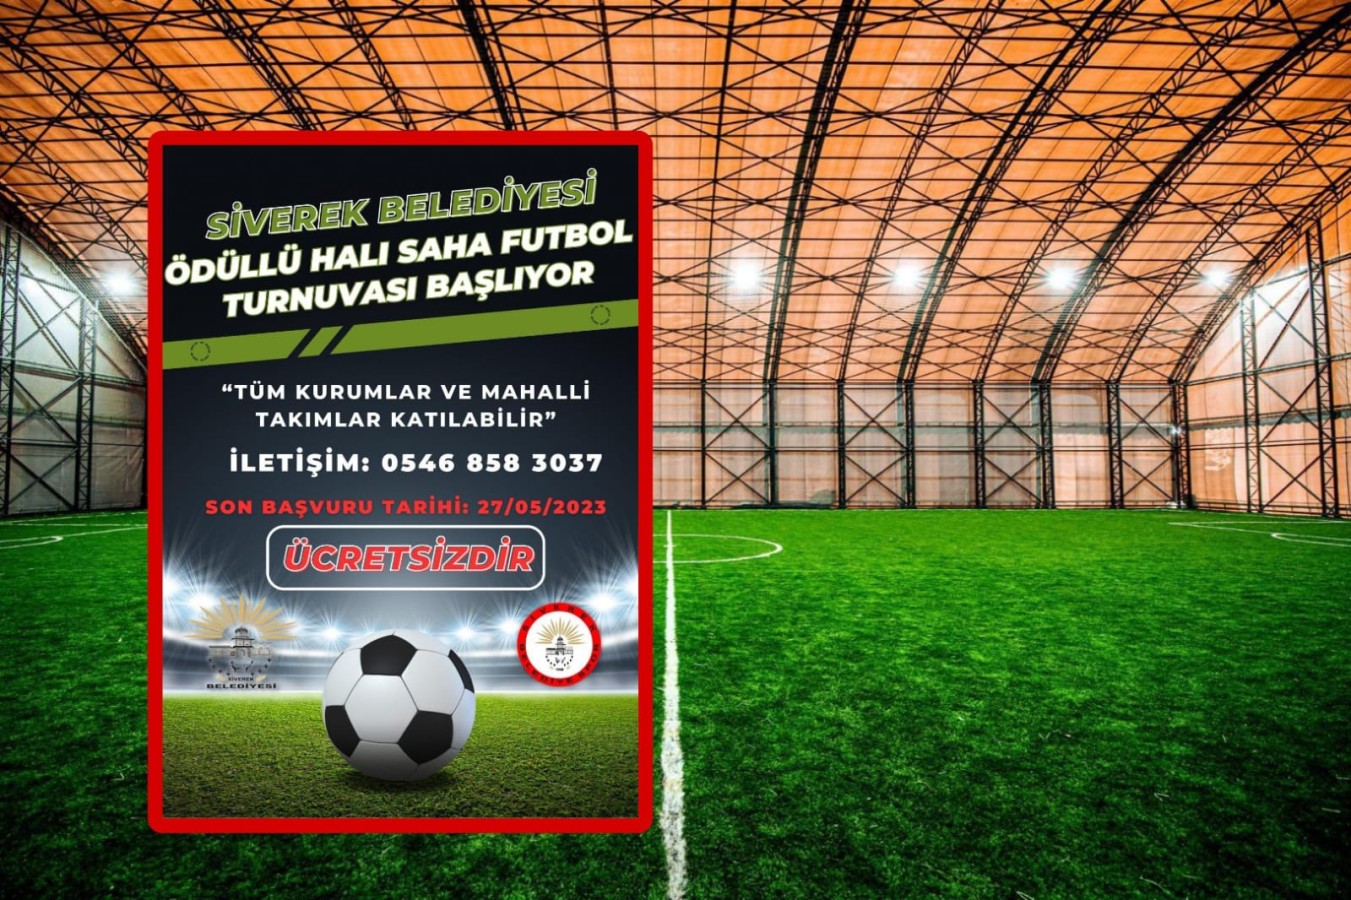 Siverek'te ödüllü futbol turnuvası düzenlenecek;